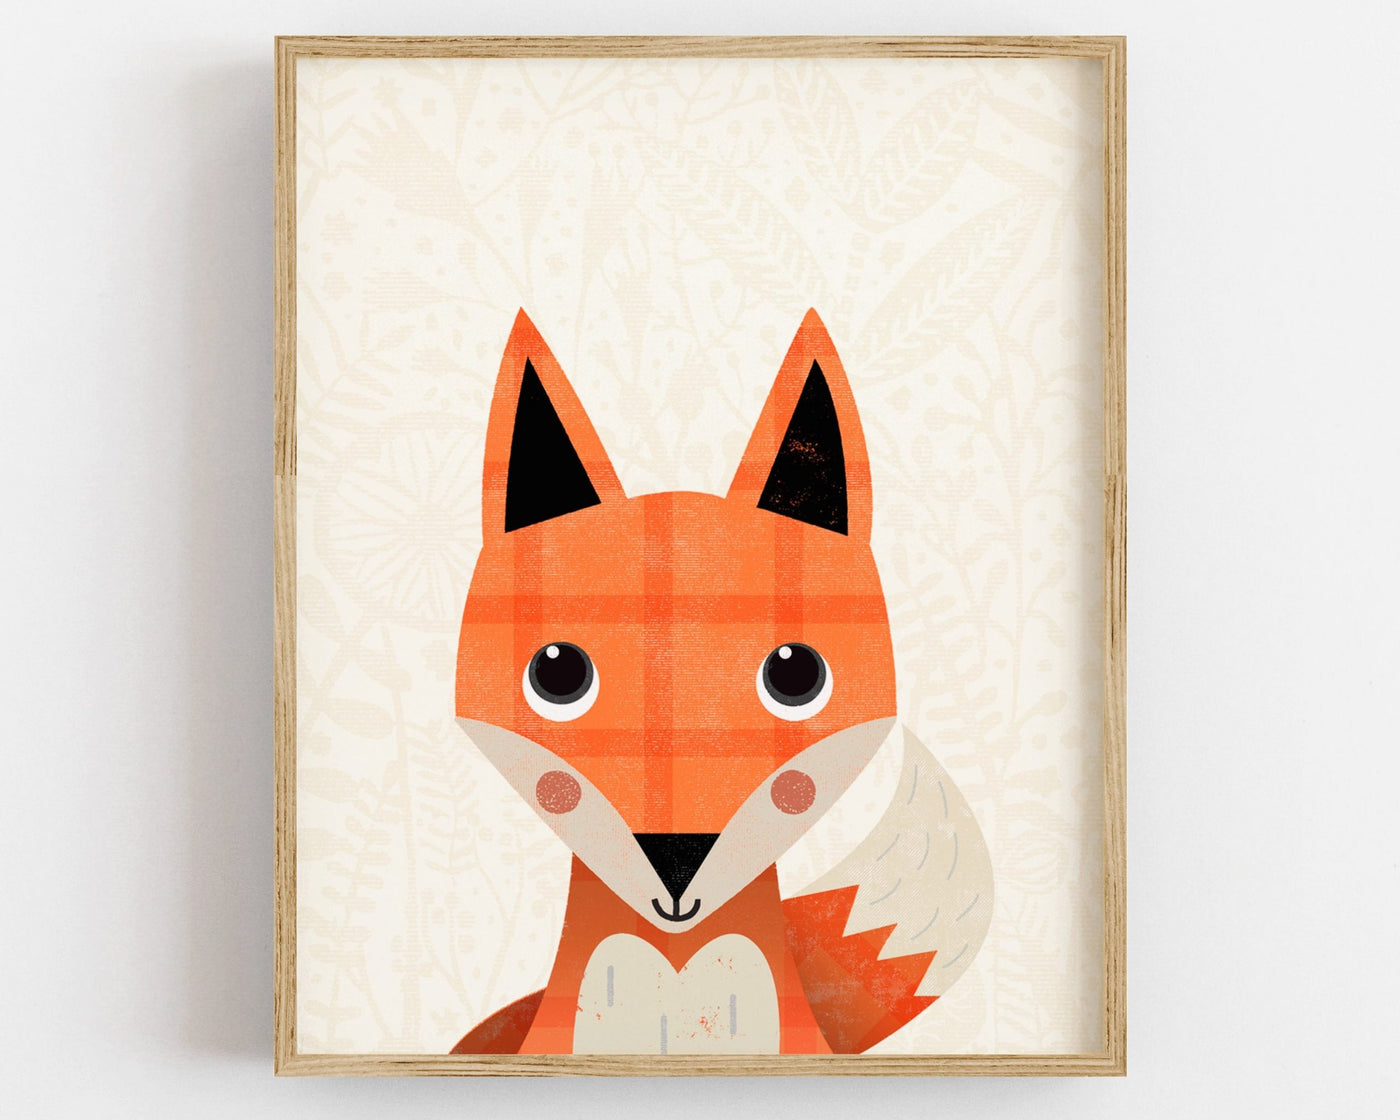 Woodland Fox Nursery Print - PaperPaintPixels